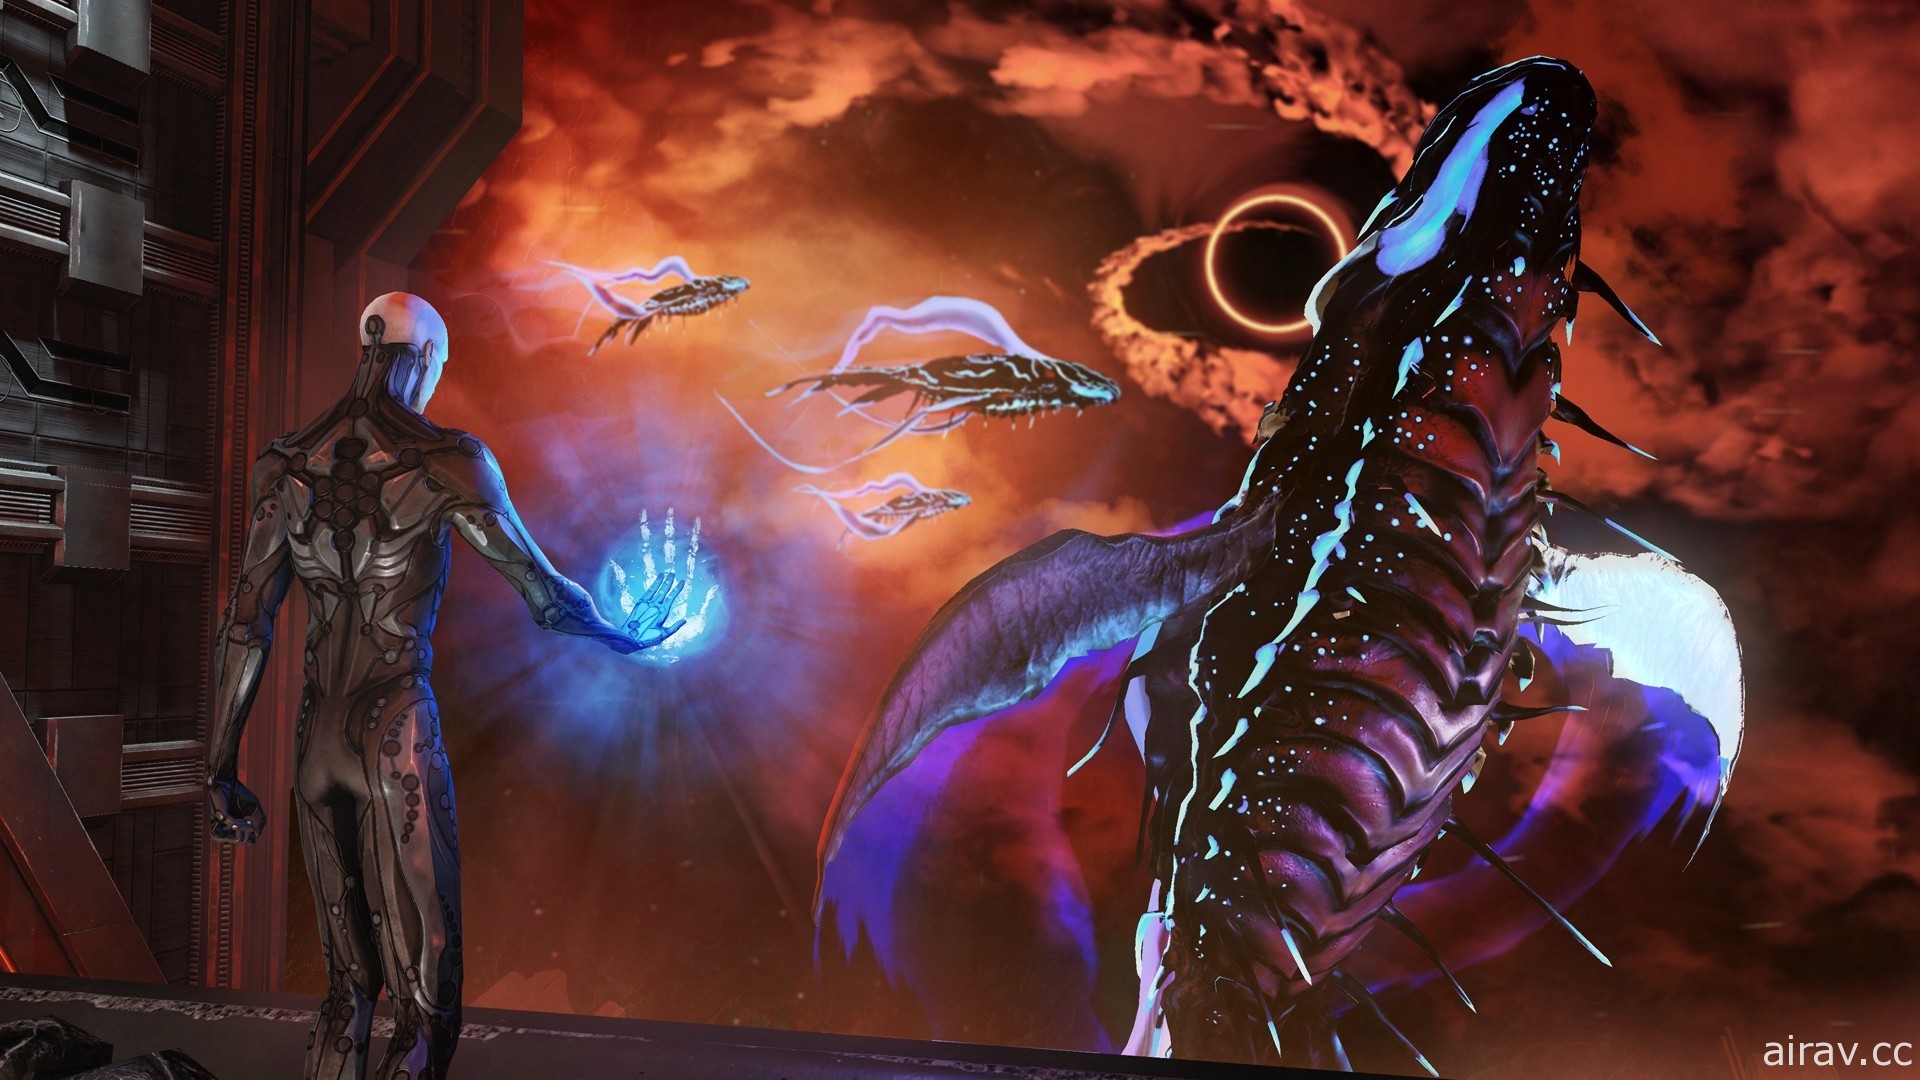 暗黑魂系科幻动作 RPG《地狱尖兵》11 月登陆 PS4 及 Switch 平台